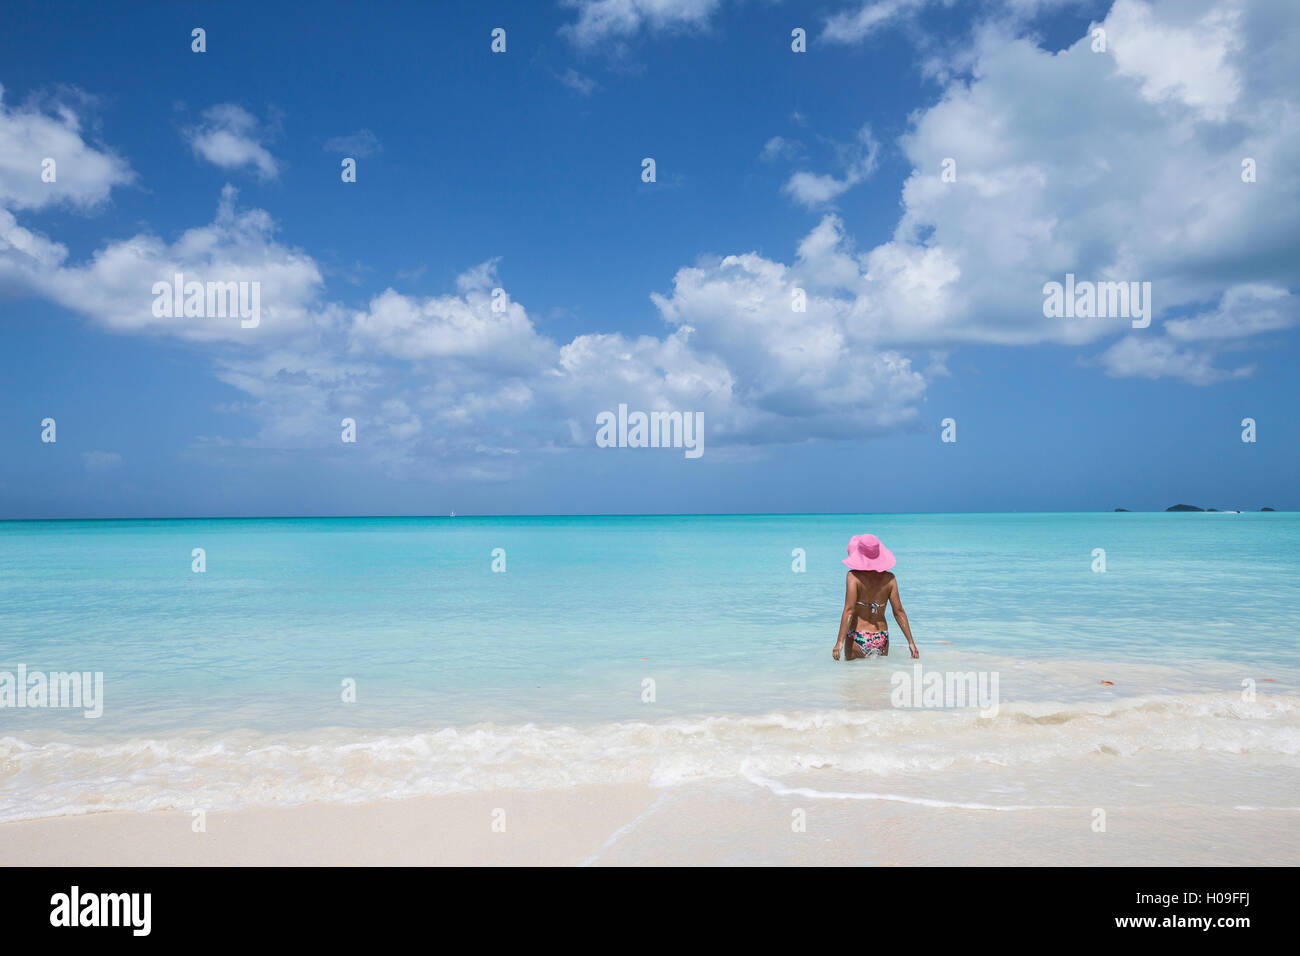 Une place avec un chapeau rose dans les eaux turquoises de la mer des Caraïbes, le nid, Antigua, Antigua et Barbuda, Iles sous le vent Banque D'Images